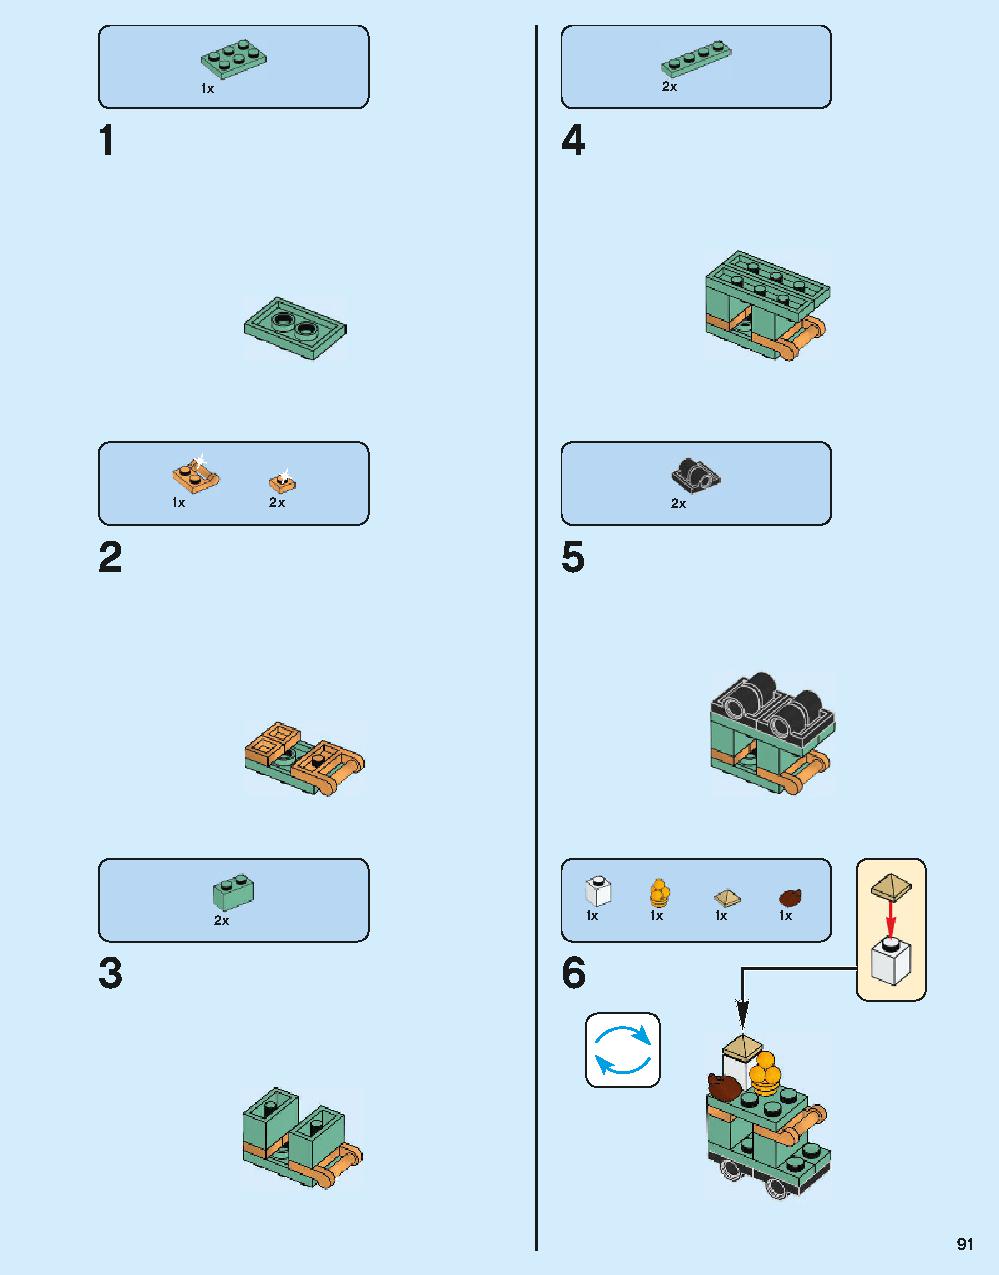 ホグワーツ特急 75955 レゴの商品情報 レゴの説明書・組立方法 91 page